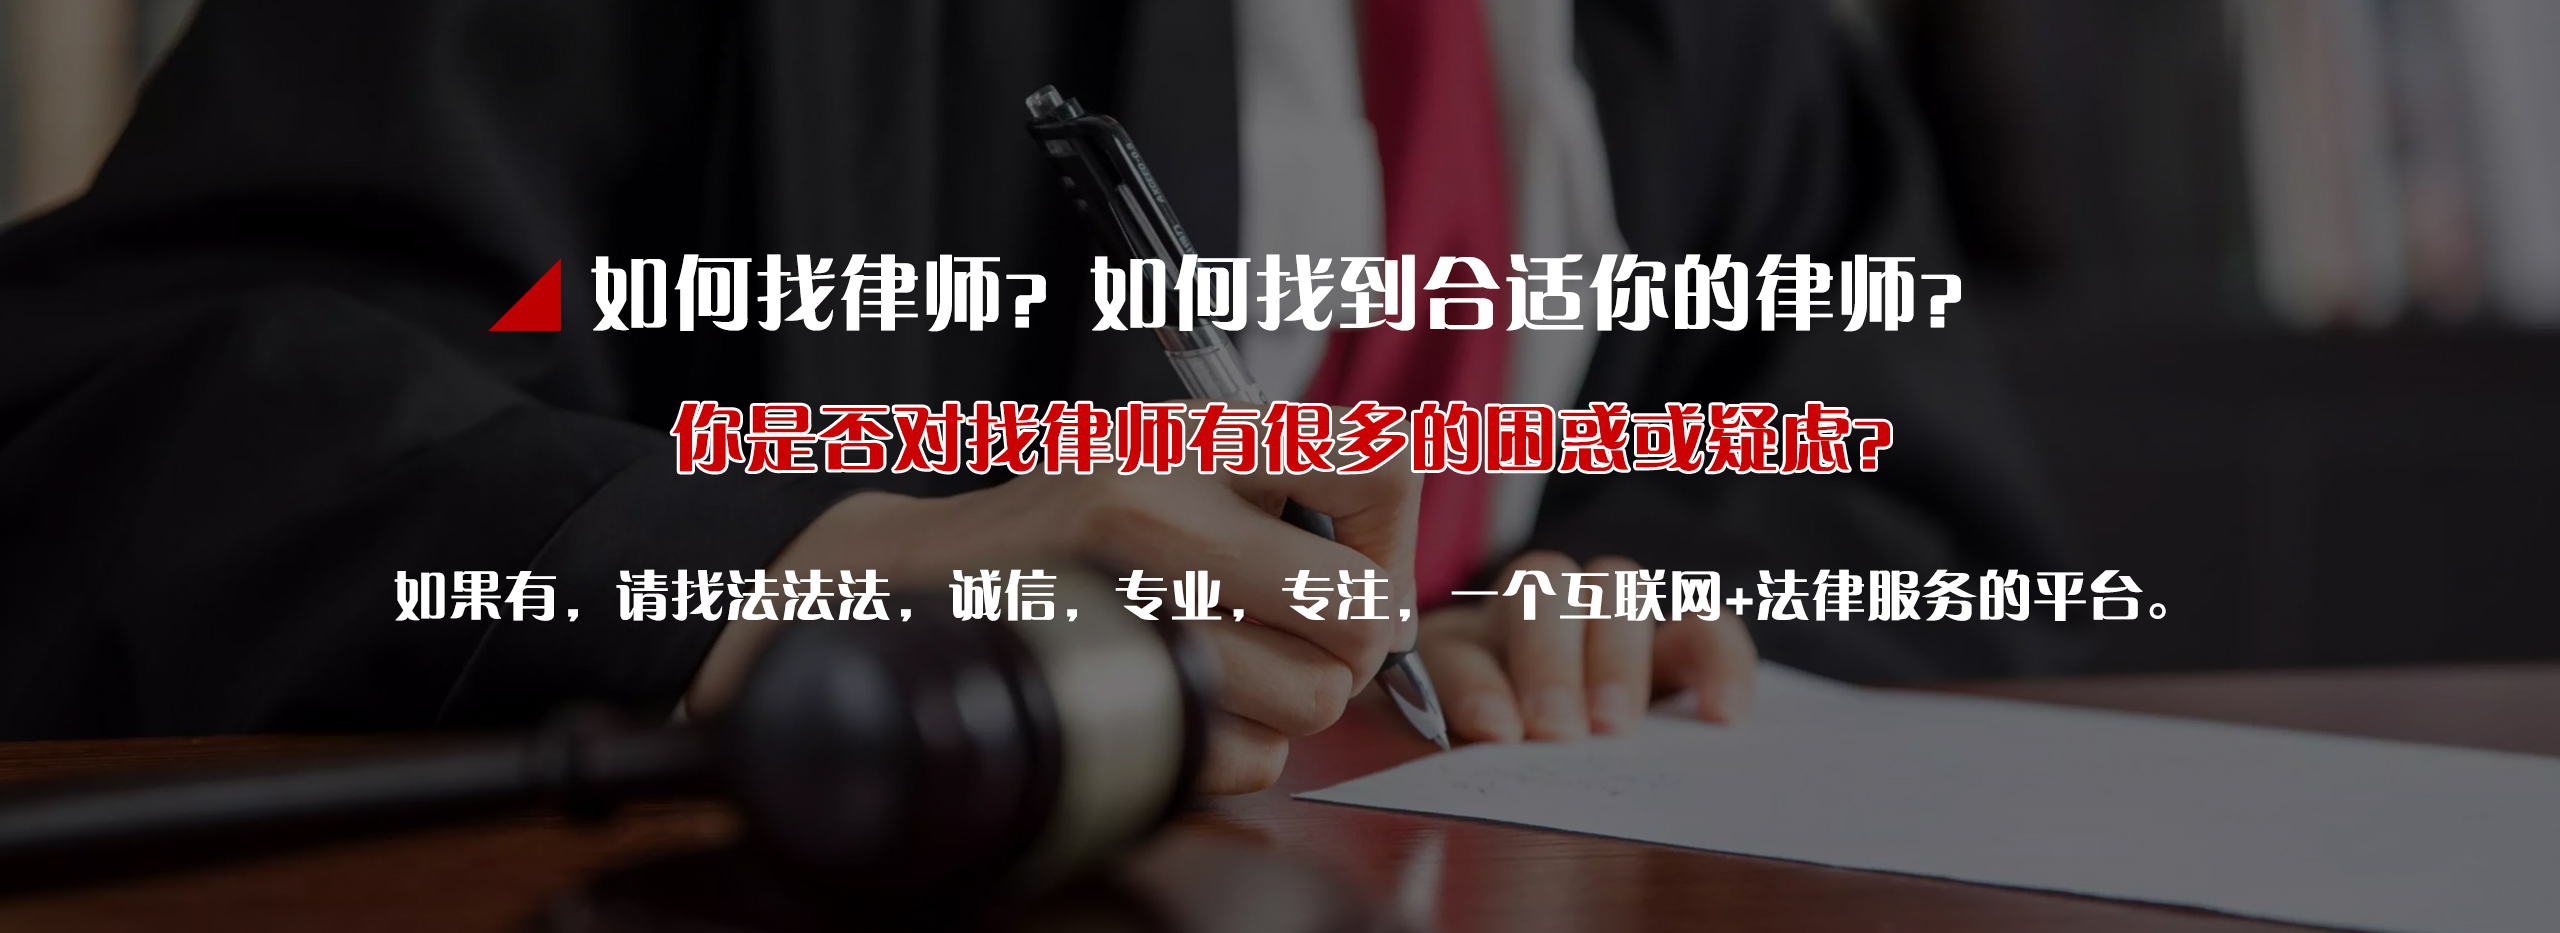 投资管理法律顾问_法律硕士相关-四川法法法信息科技有限公司